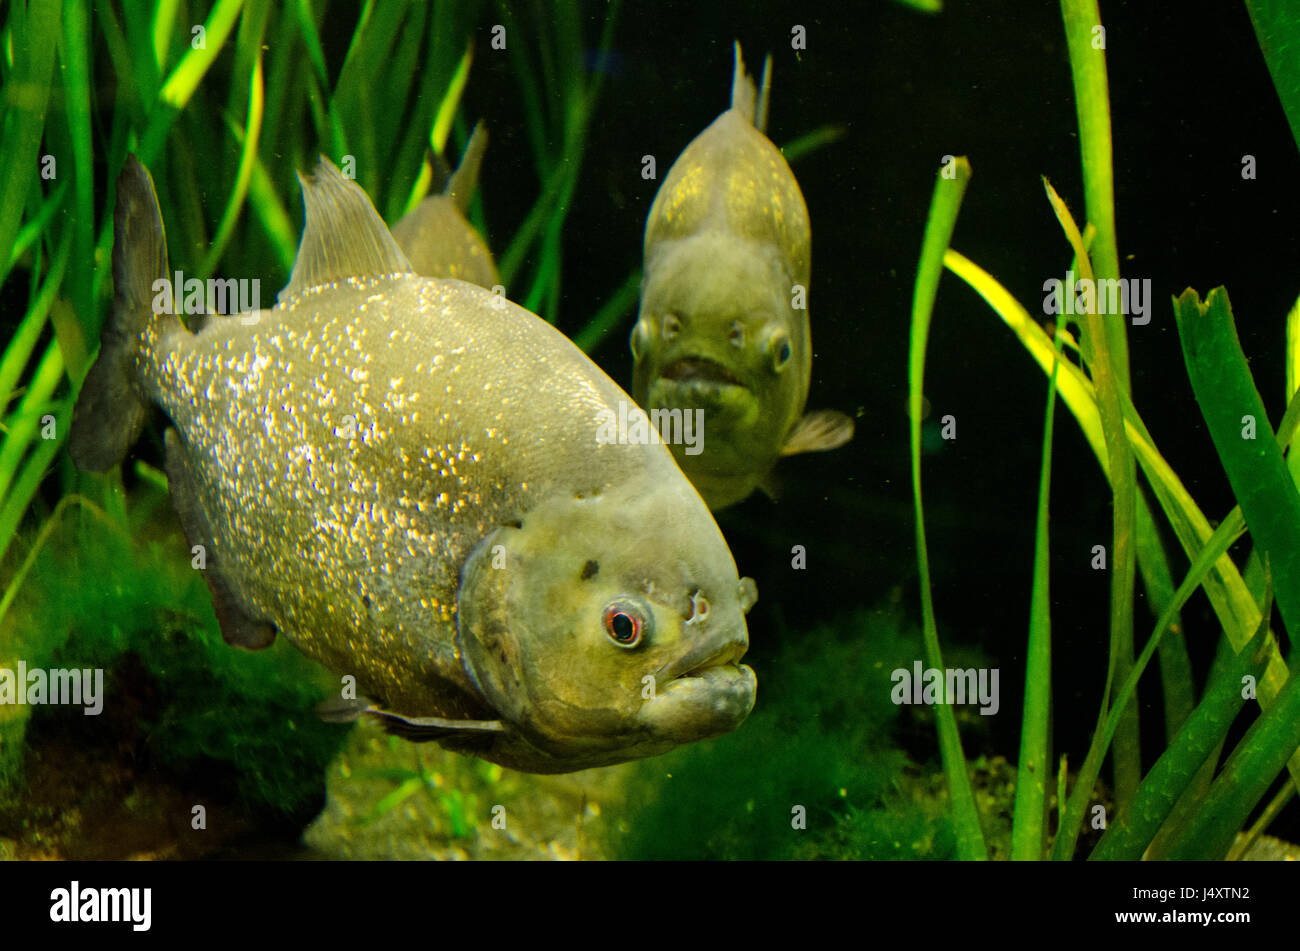 Piranhas in an aquarium Stock Photo